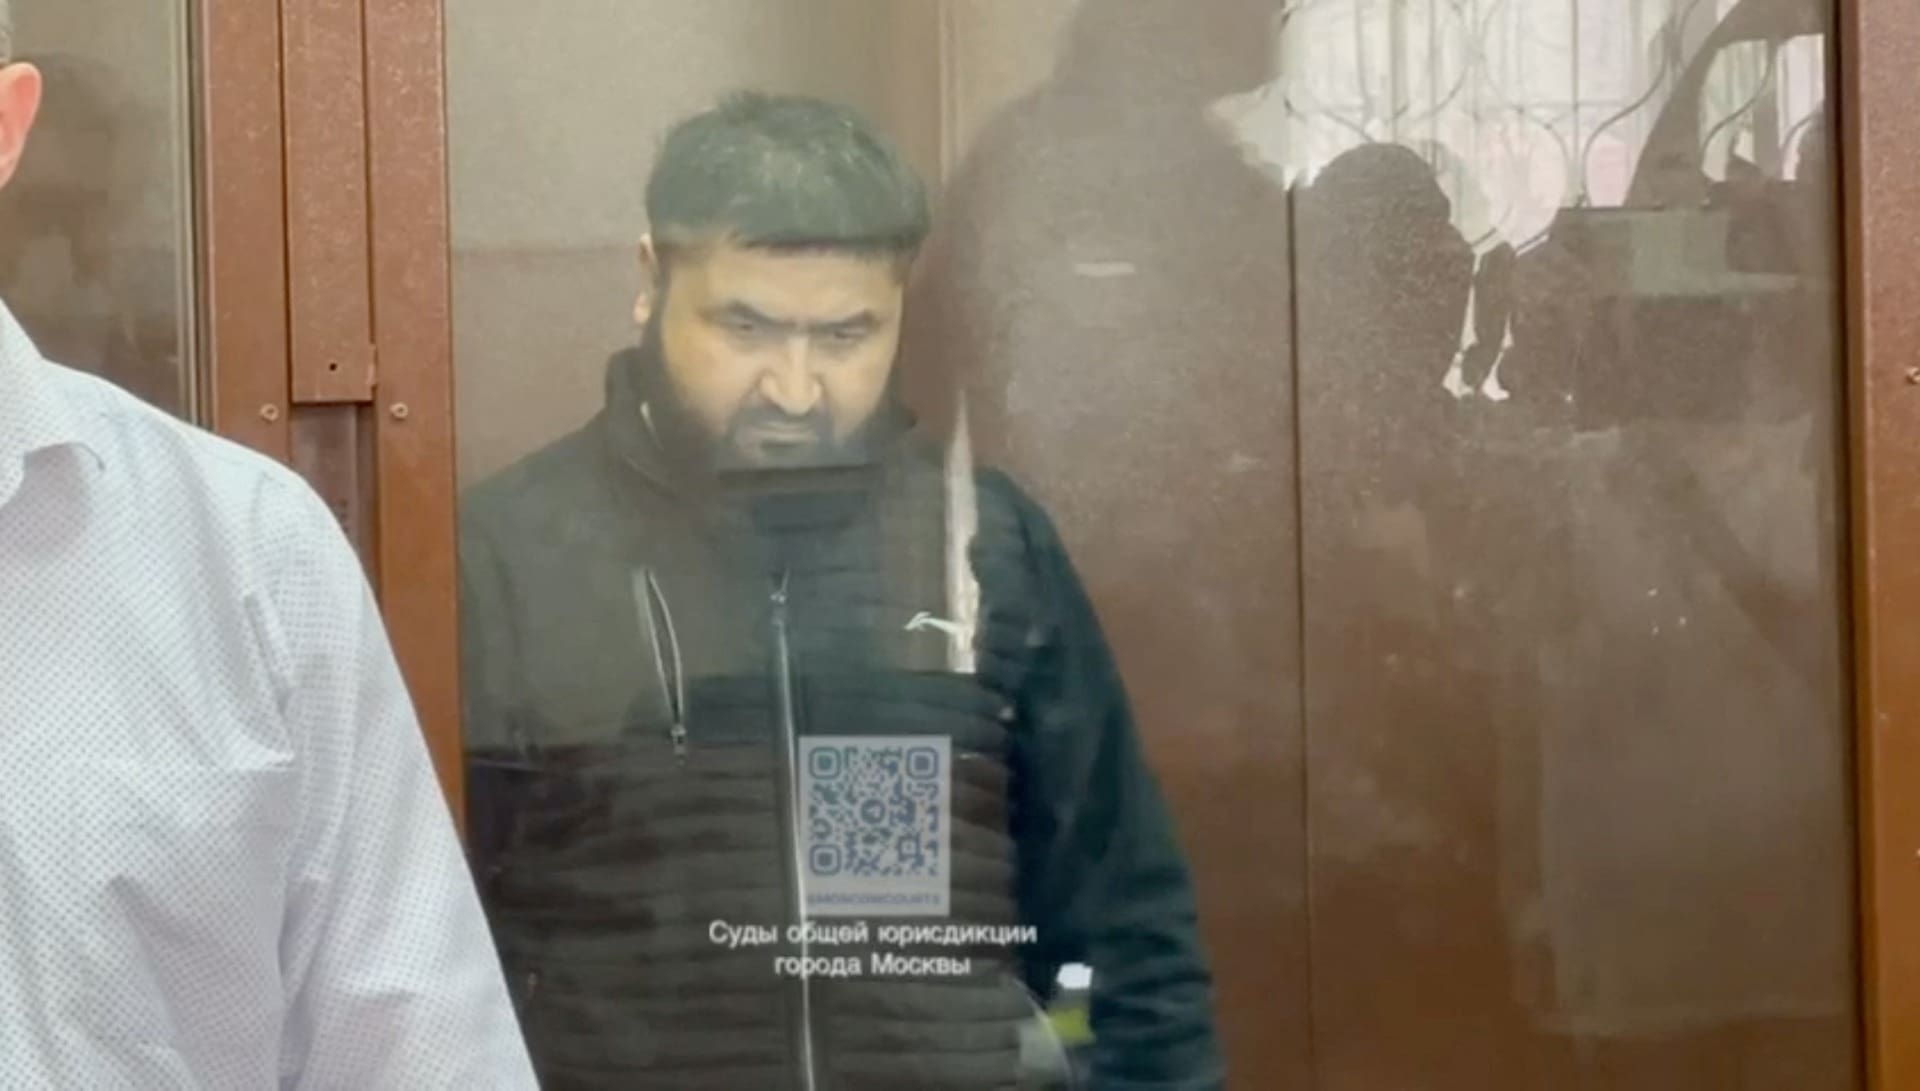 oito suspeitos de atentado em moscovo em prisao preventiva